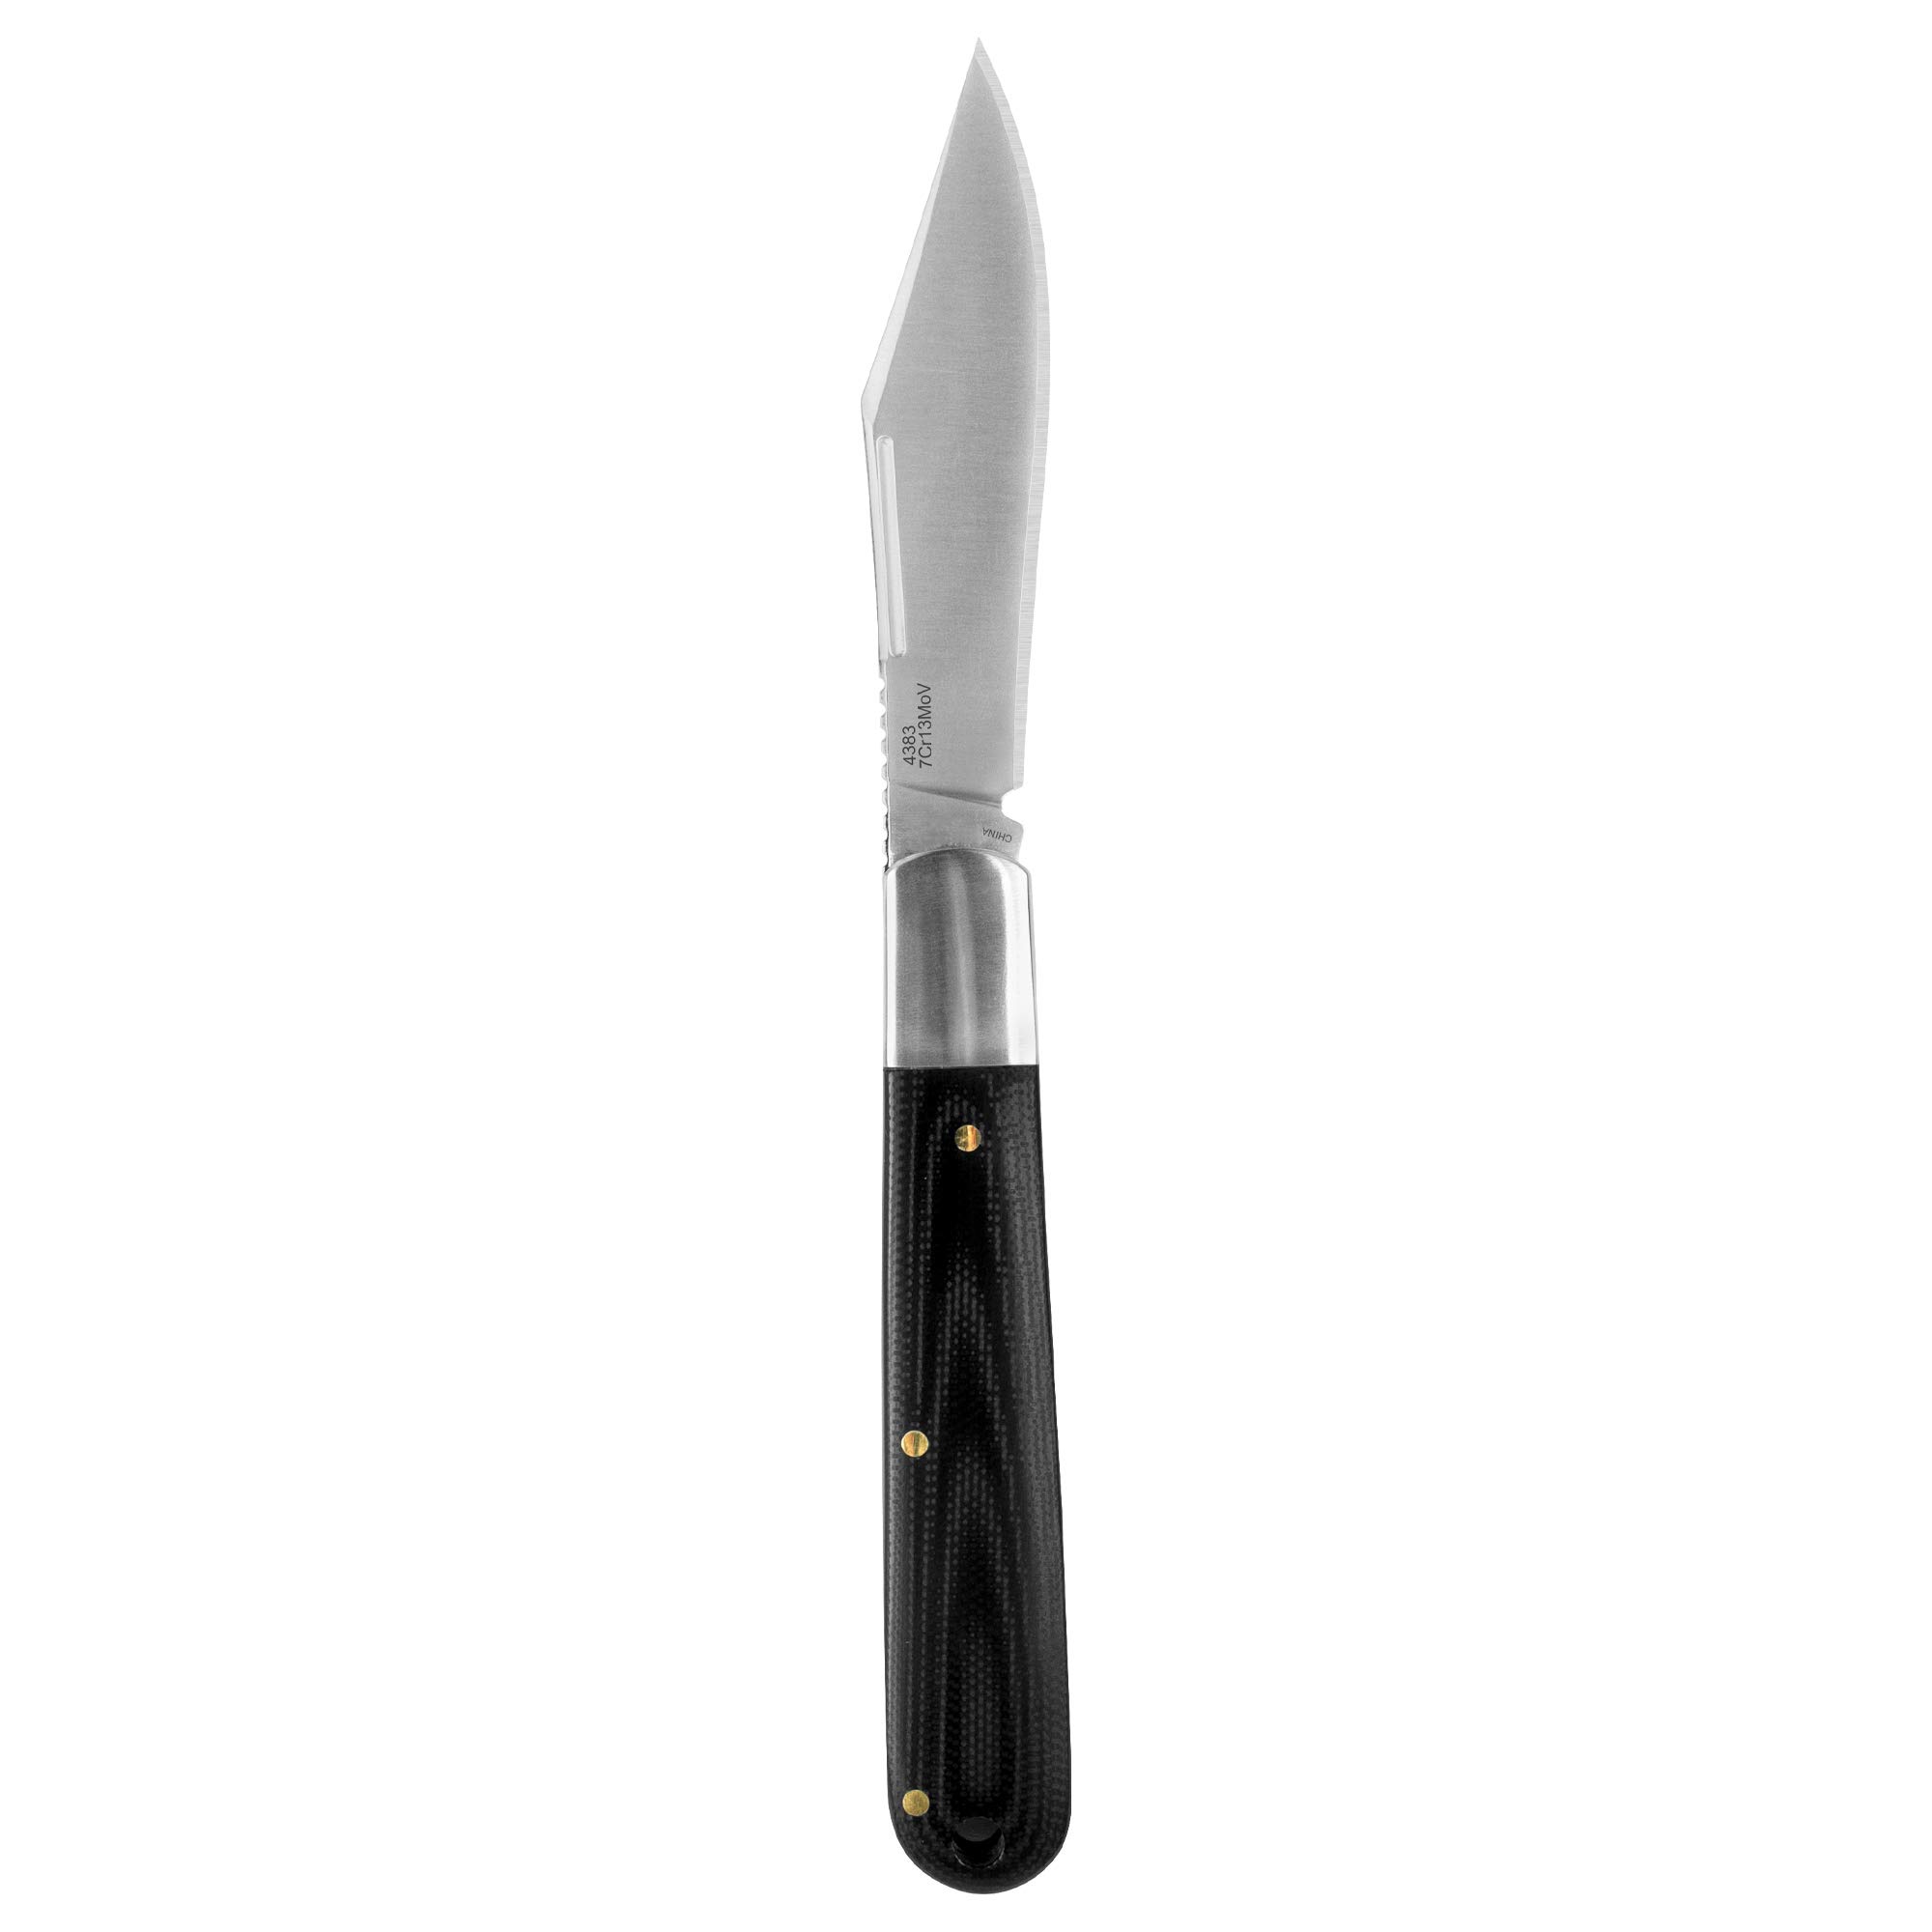 Kershaw Culpepper Folding Pocket Knife, 3.25-Inch Blade with Manual Open, Slipjoint Lock (4383), Barlow